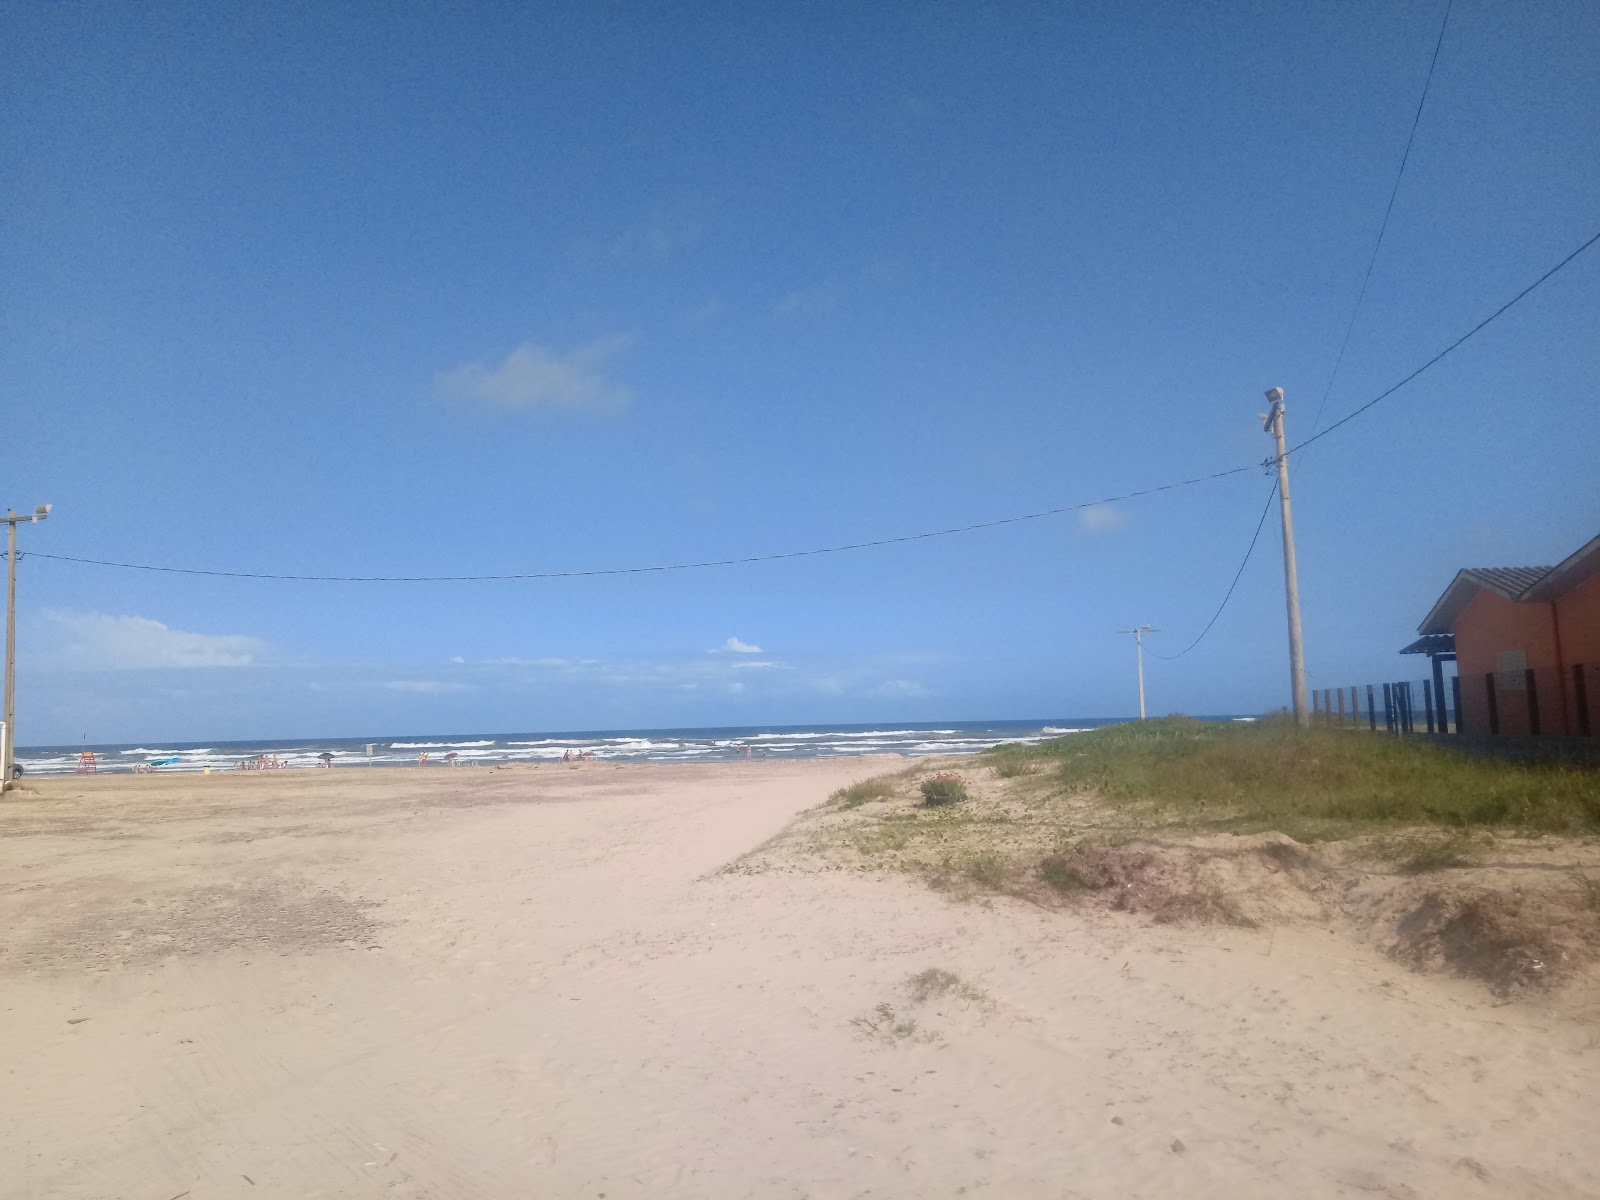 Zdjęcie Praia de Arroio do Silva obszar udogodnień